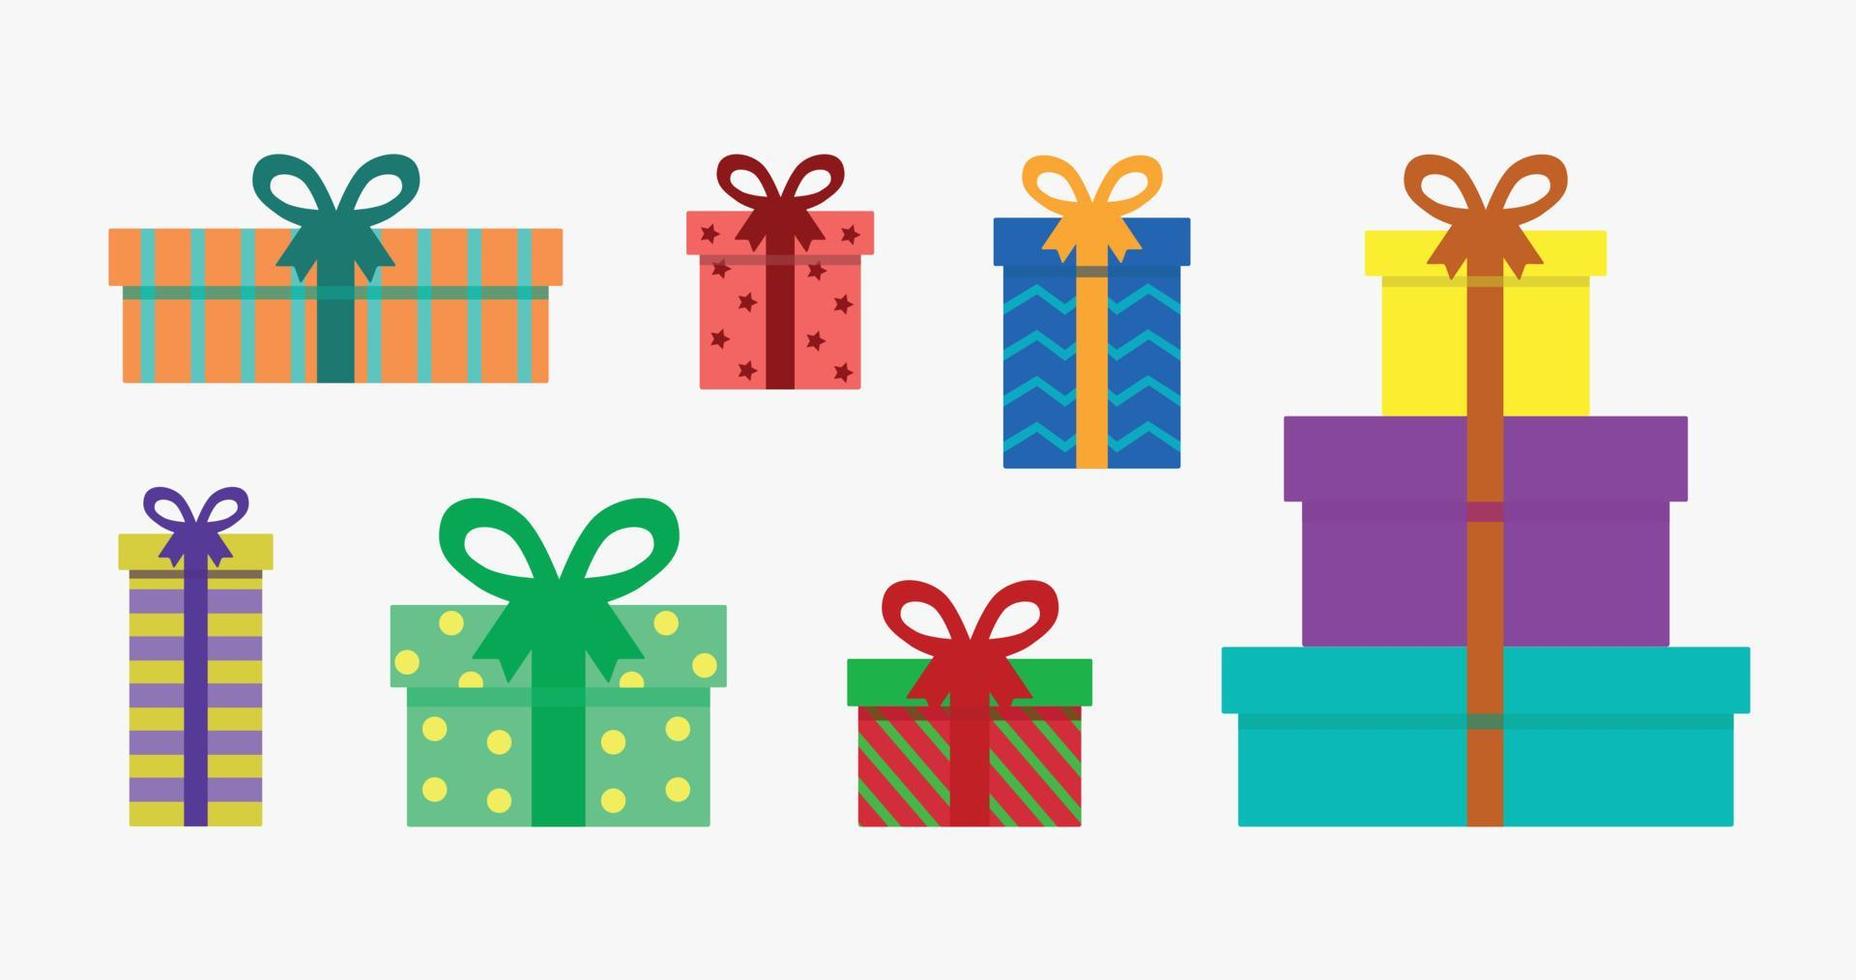 conjunto de vectores de cajas de regalo de colores aislado sobre fondo blanco. regalos bellamente envueltos en varias cajas brillantes, rayadas y manchadas atadas con cintas. celebración de cumpleaños, navidad y otras fiestas.